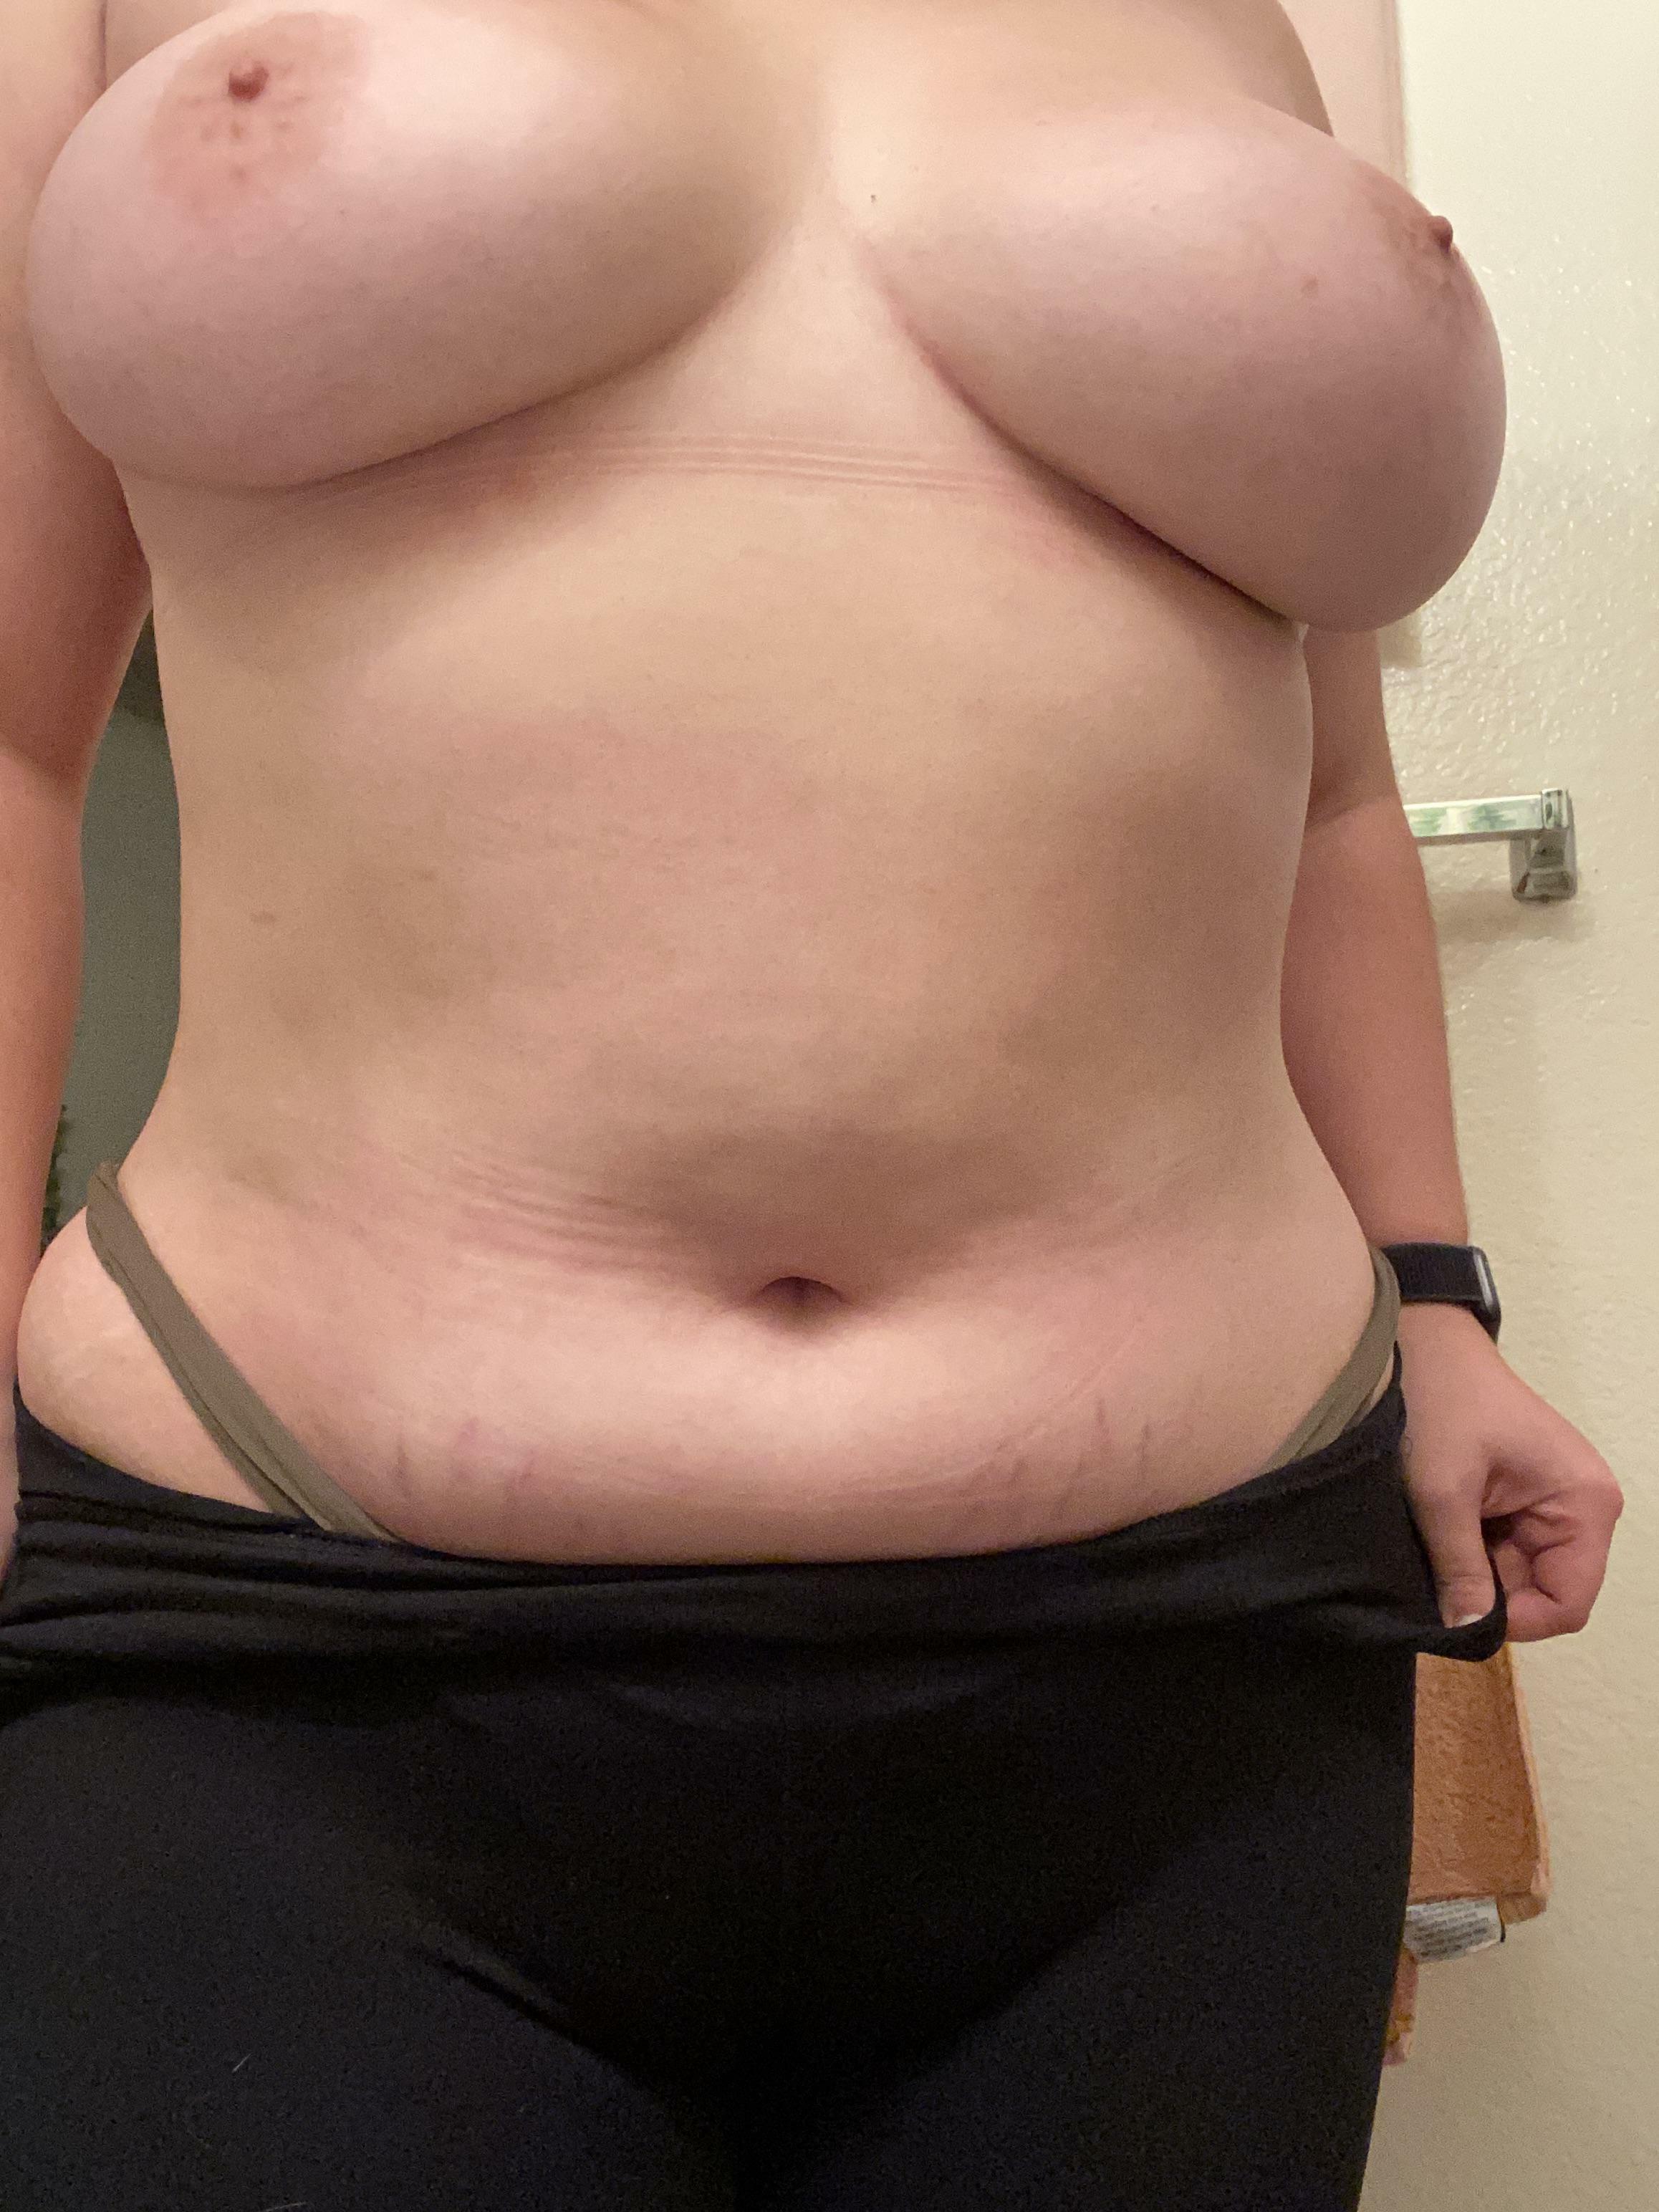 The prettiest nipples Curves - 2316x3088